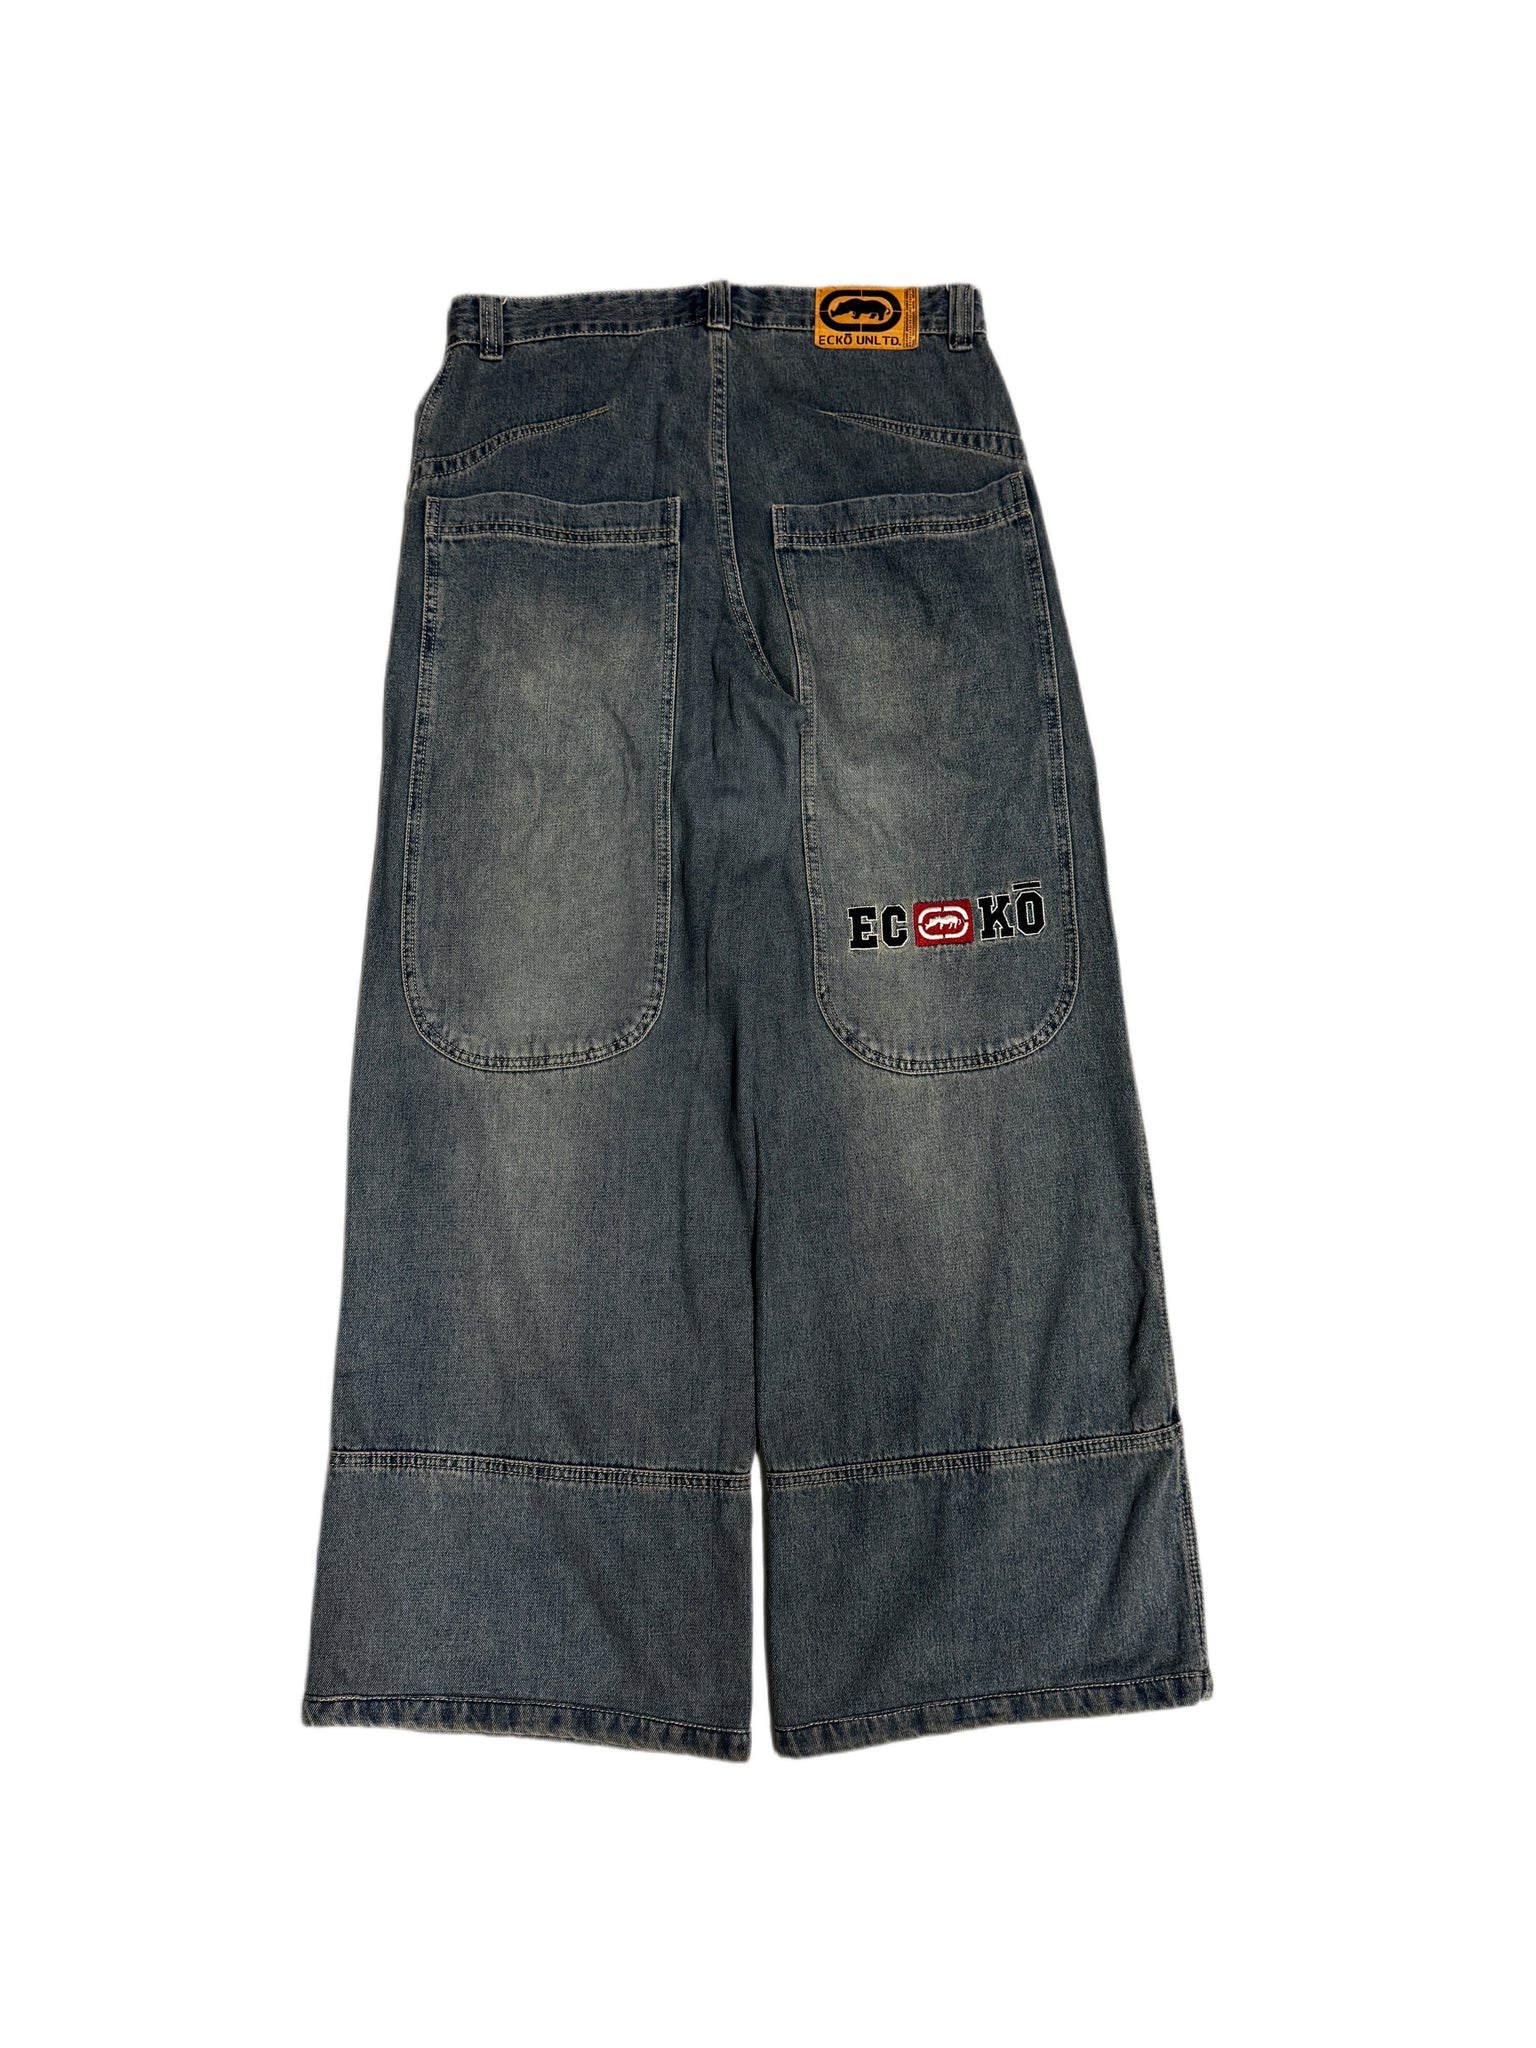 Ecko Vintage Washed Baggy Denim Jean